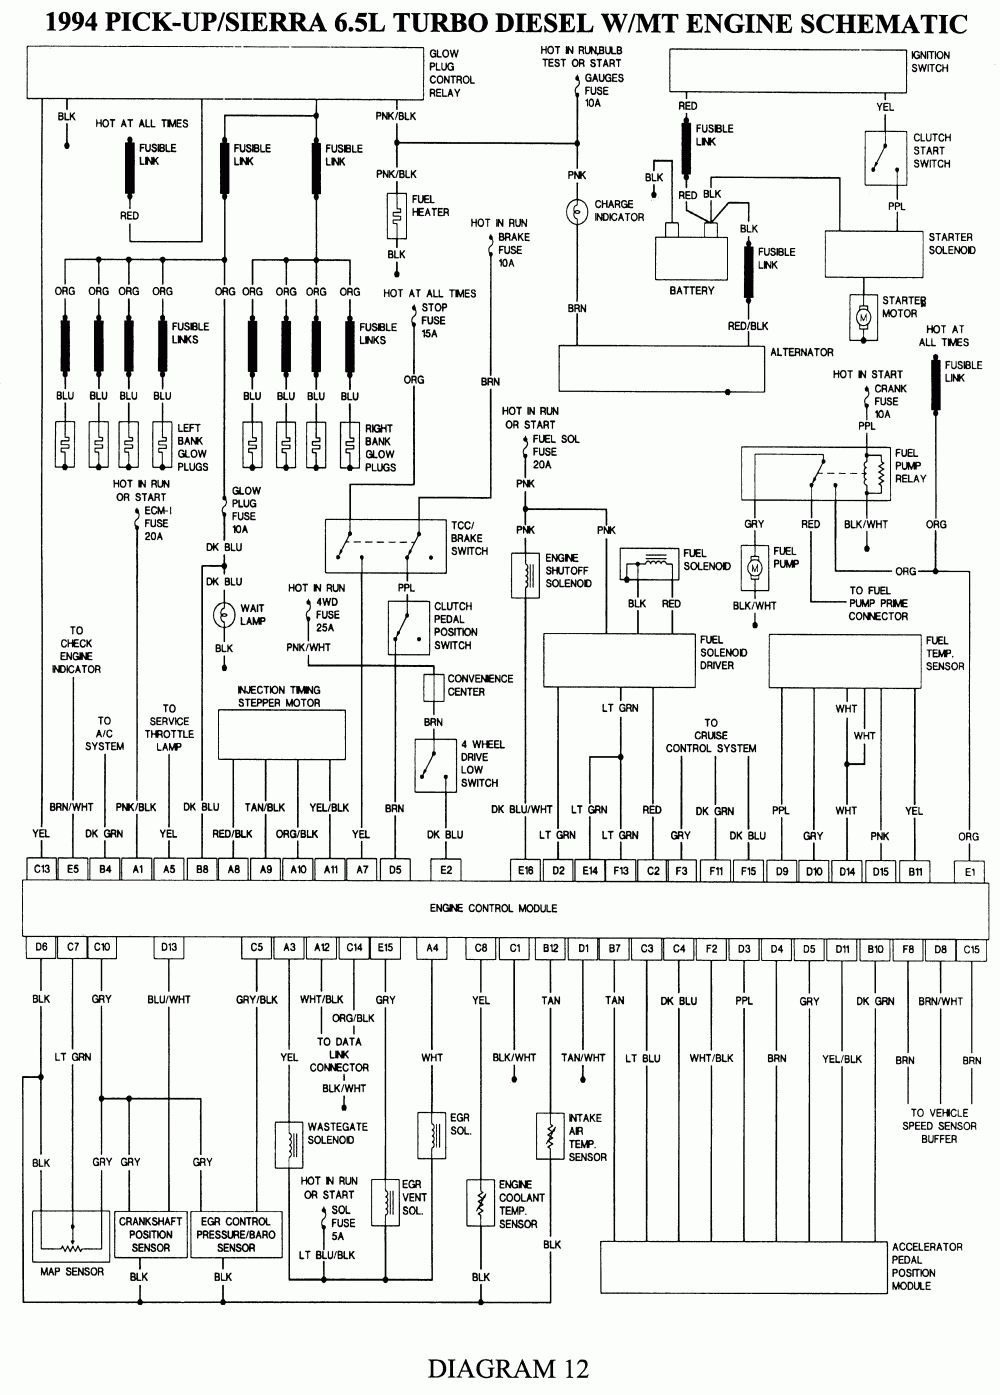 Repair Guides | Wiring Diagrams | Wiring Diagrams | Autozone - 2002 Chevy Silverado Trailer Wiring Diagram